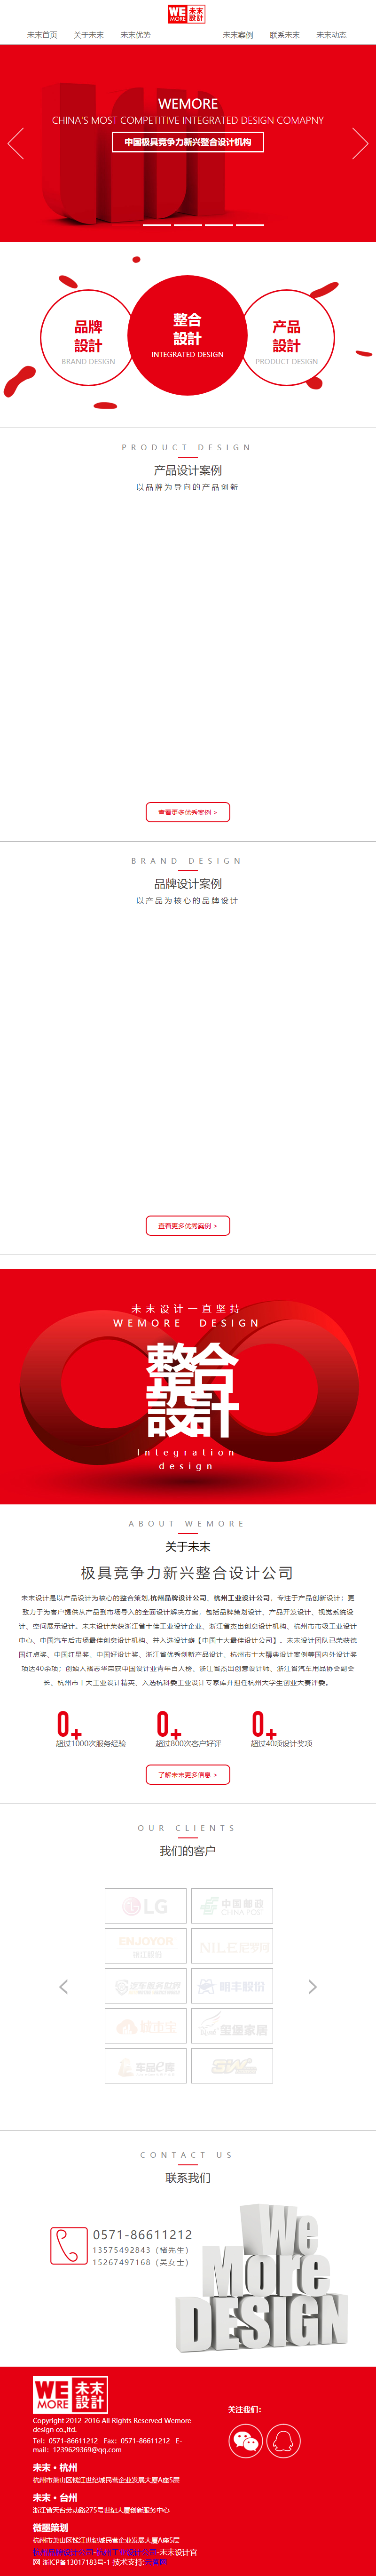 杭州未末工业设计有限公司网站案例